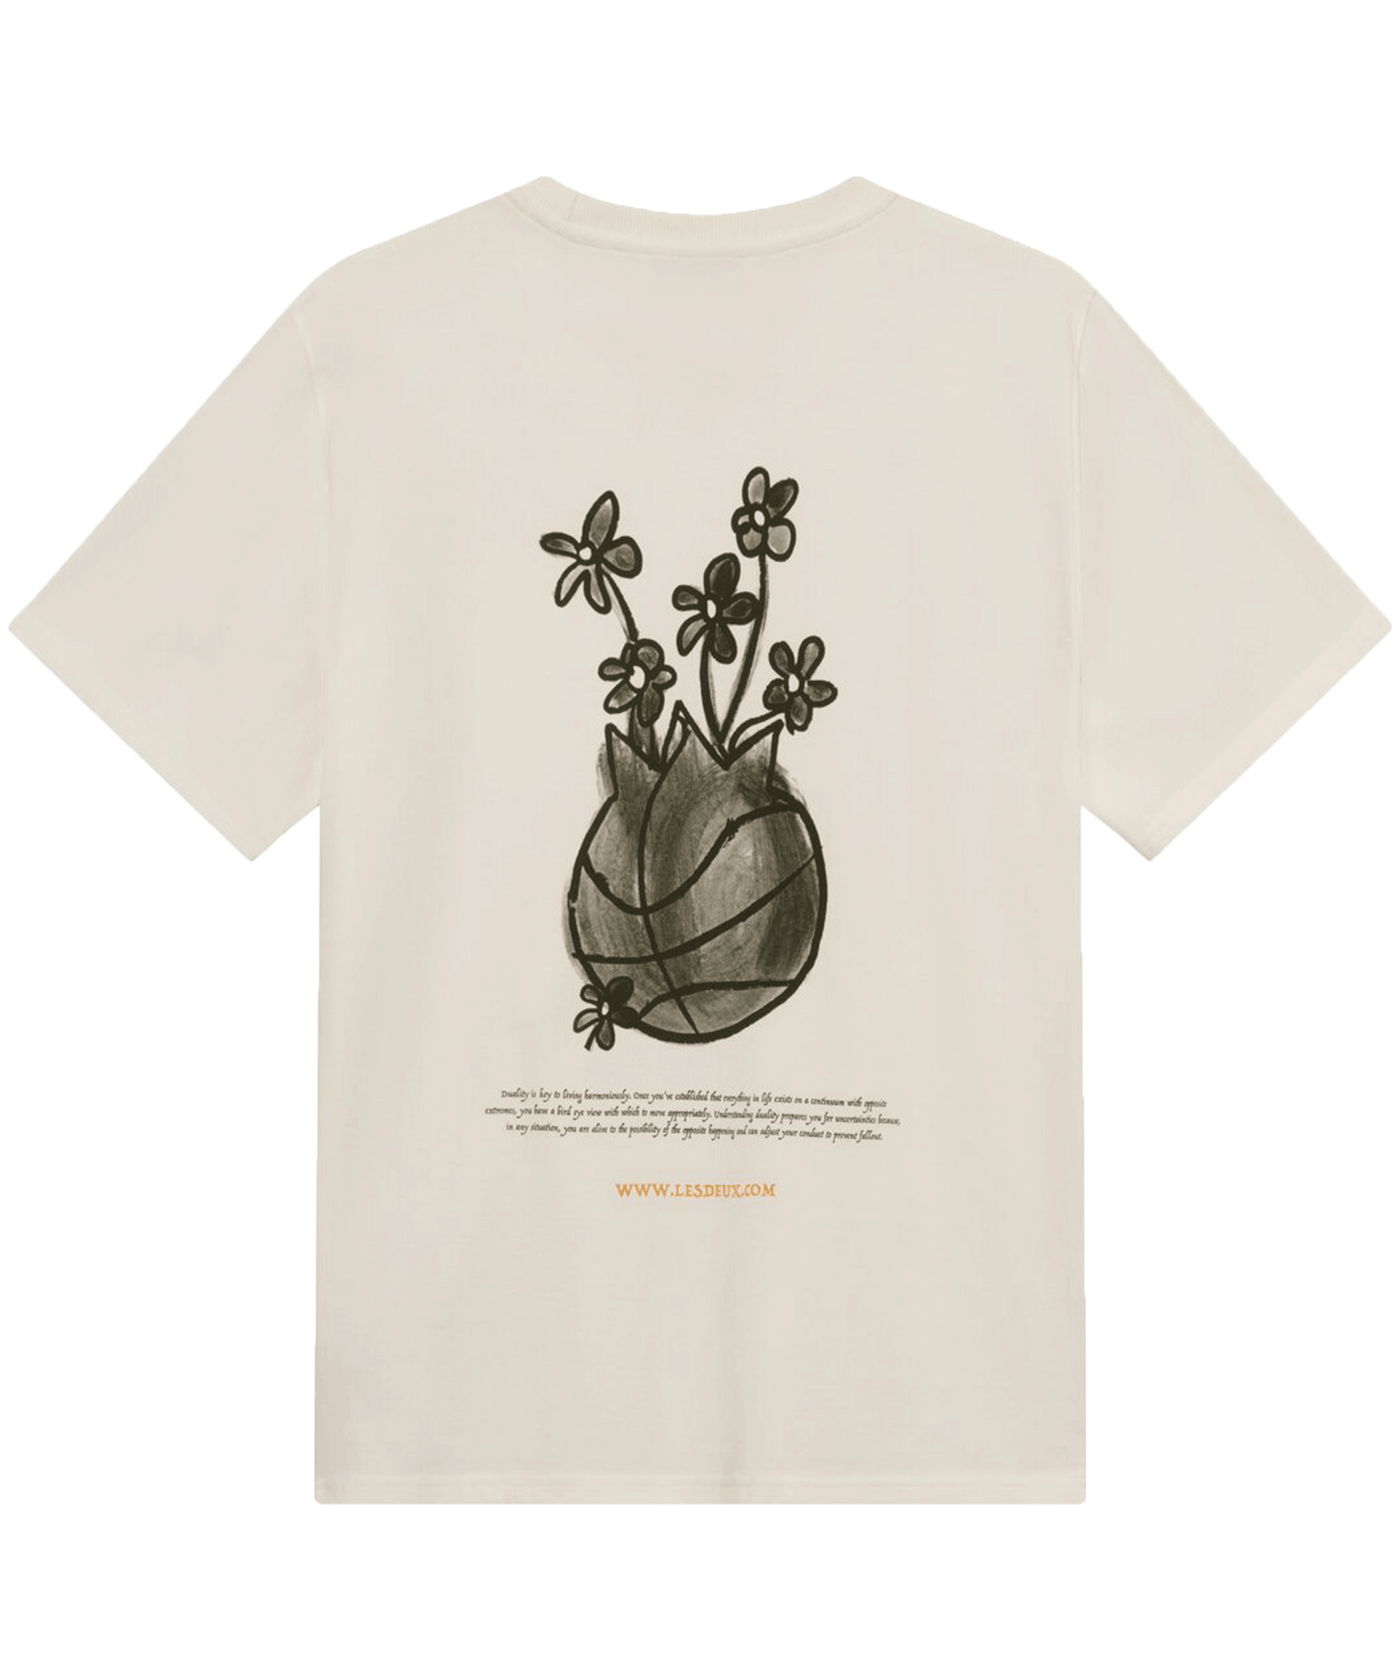 Les Deux - Ldm101159 - Duality T-shirt - Light Ivory